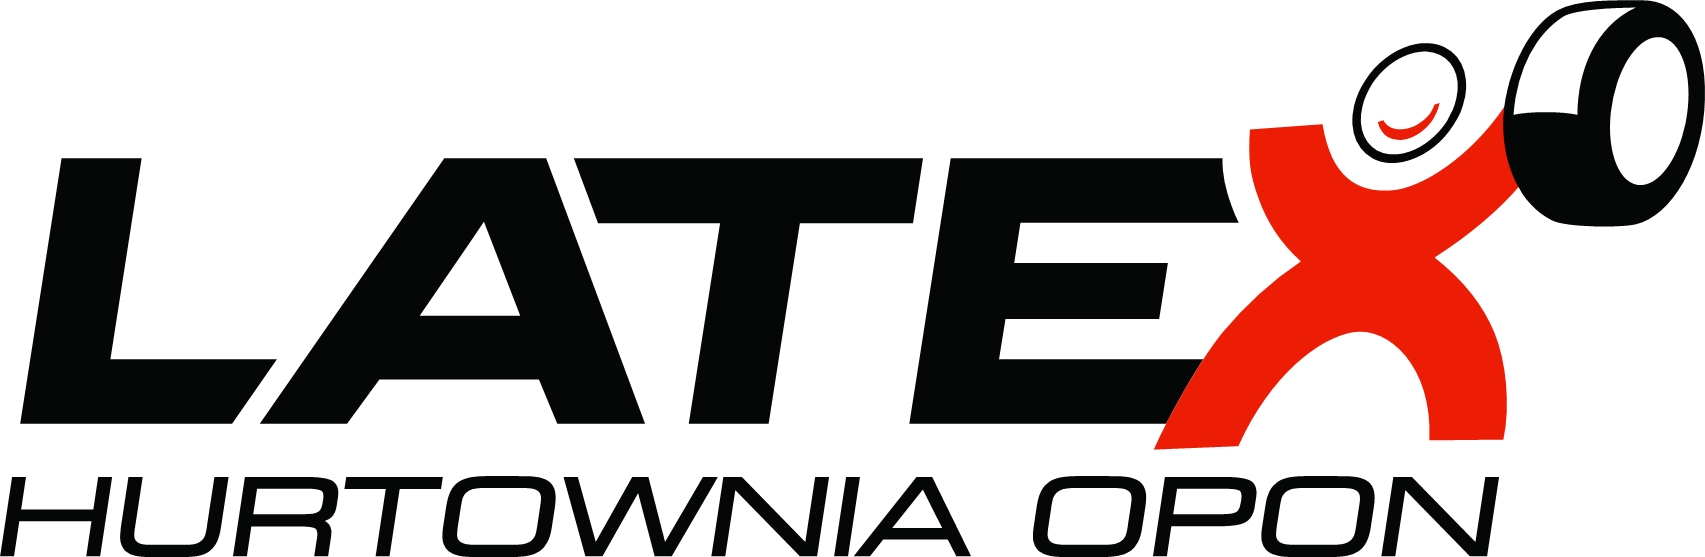 logo latex hurtownia opon1